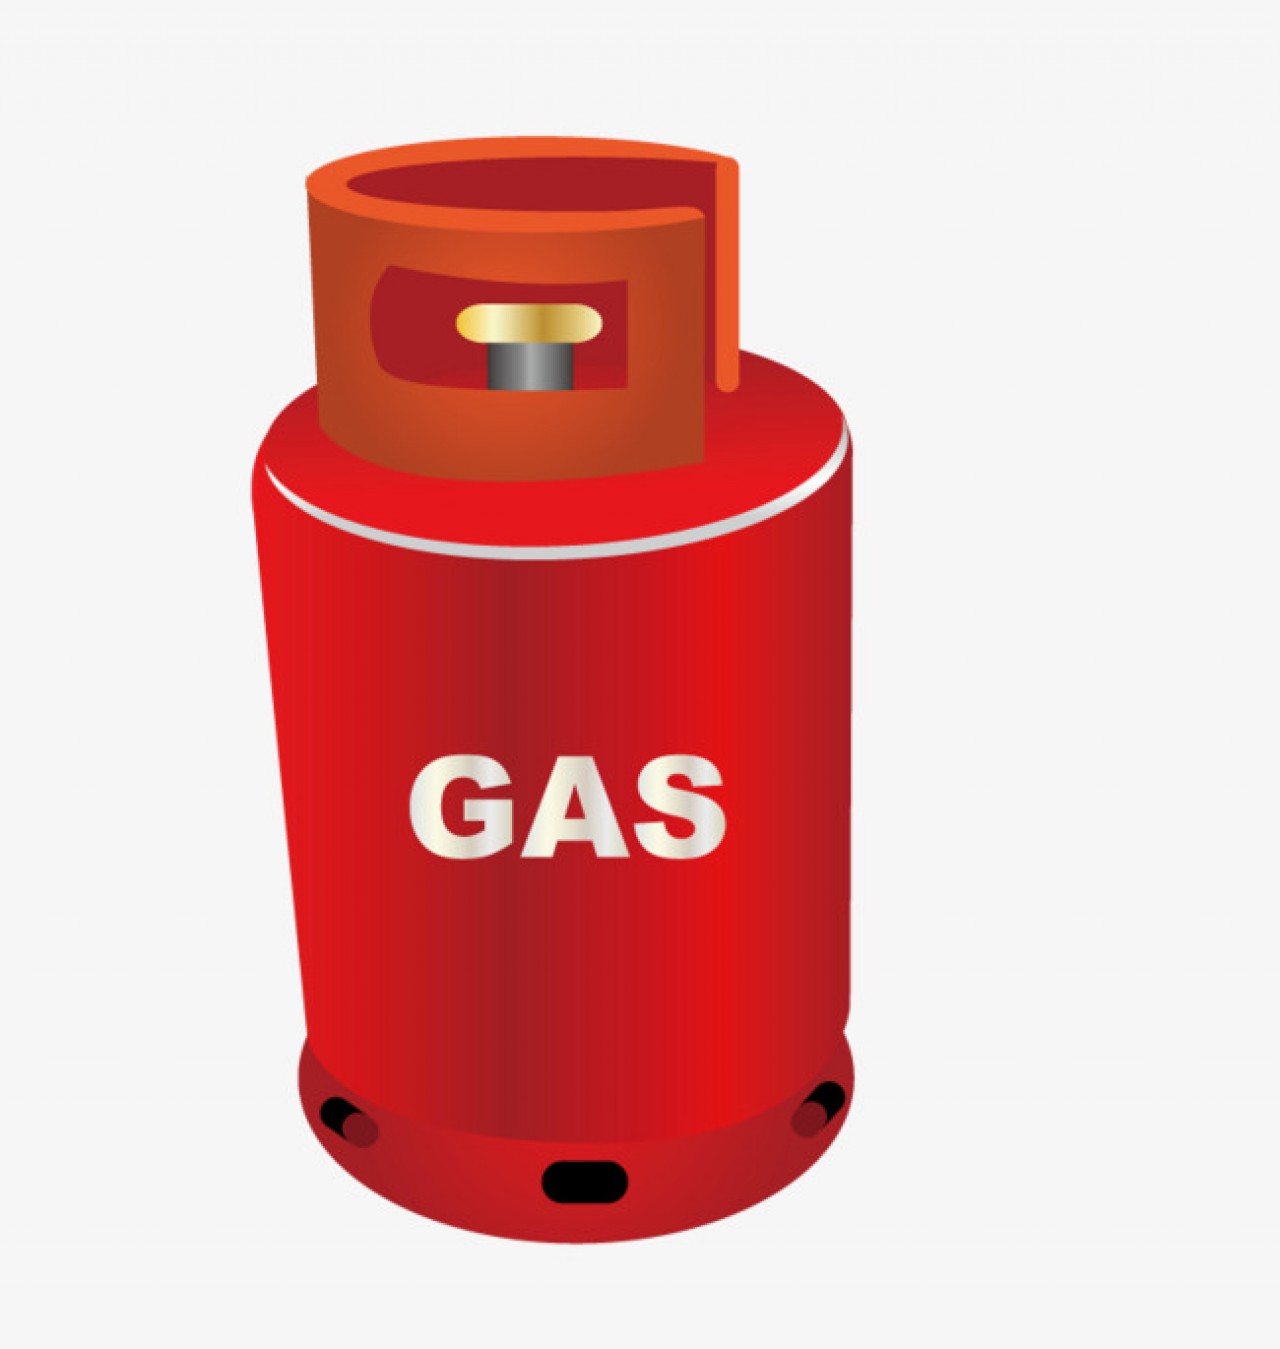 Acordo Quadro para Fornecimento de Gás